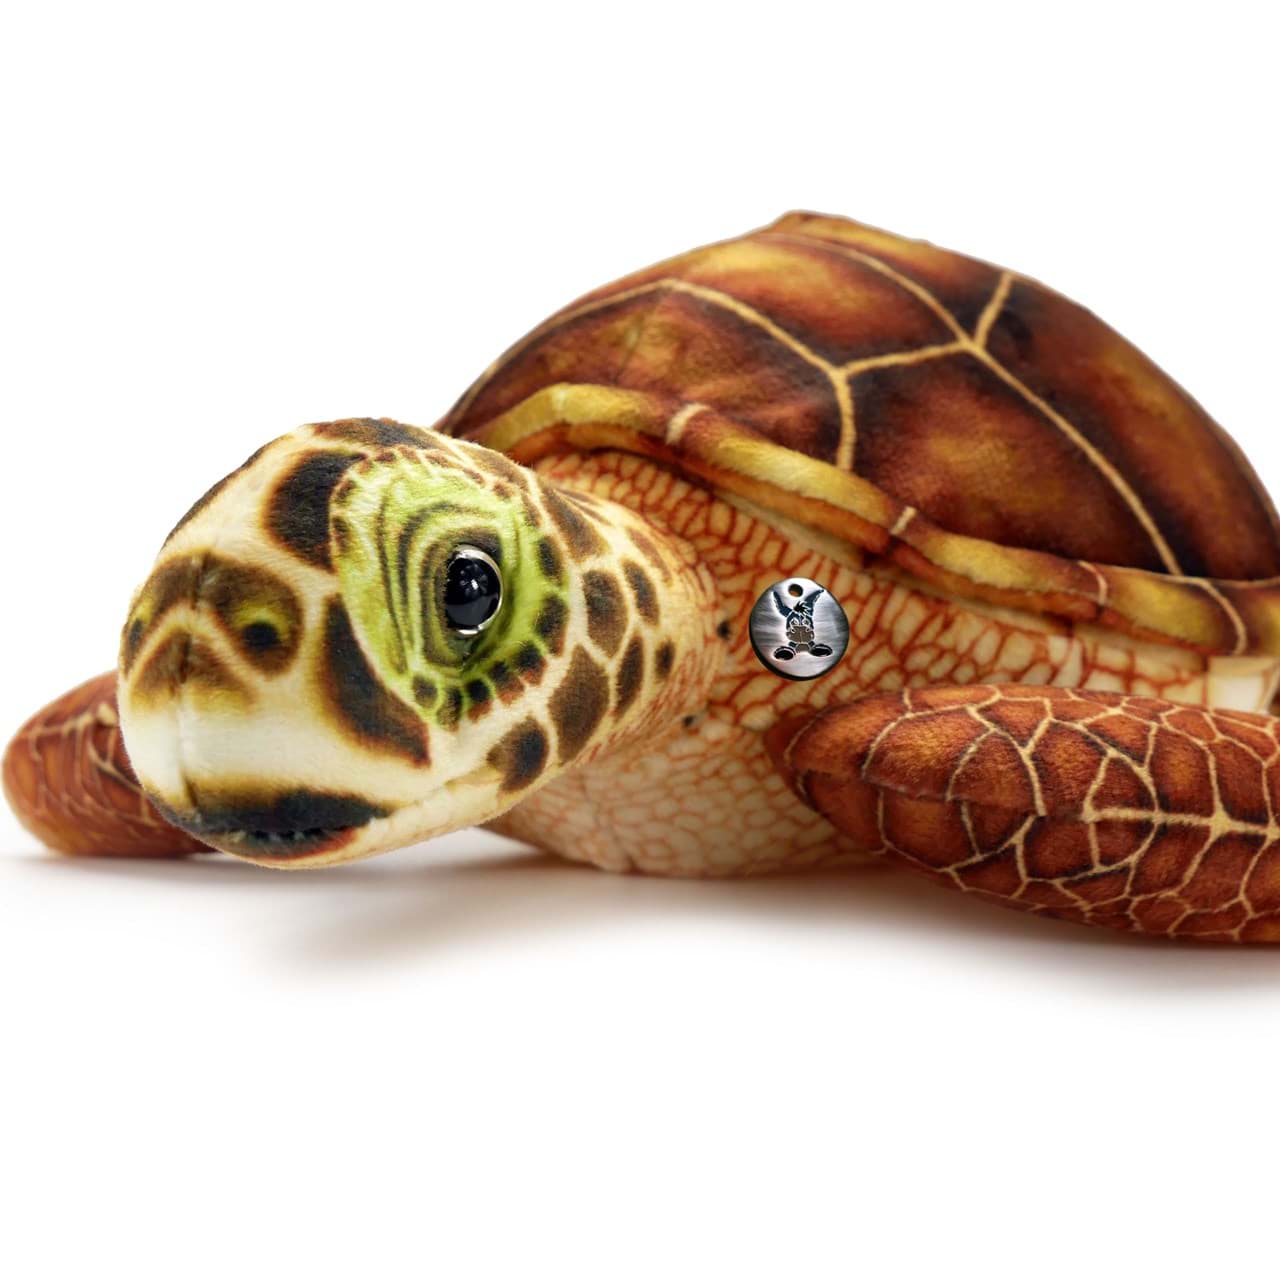 Plüsch Stofftier Kuscheltier Schildkröte mit Glitzeraugen 55cm Plush Doll Turtle 